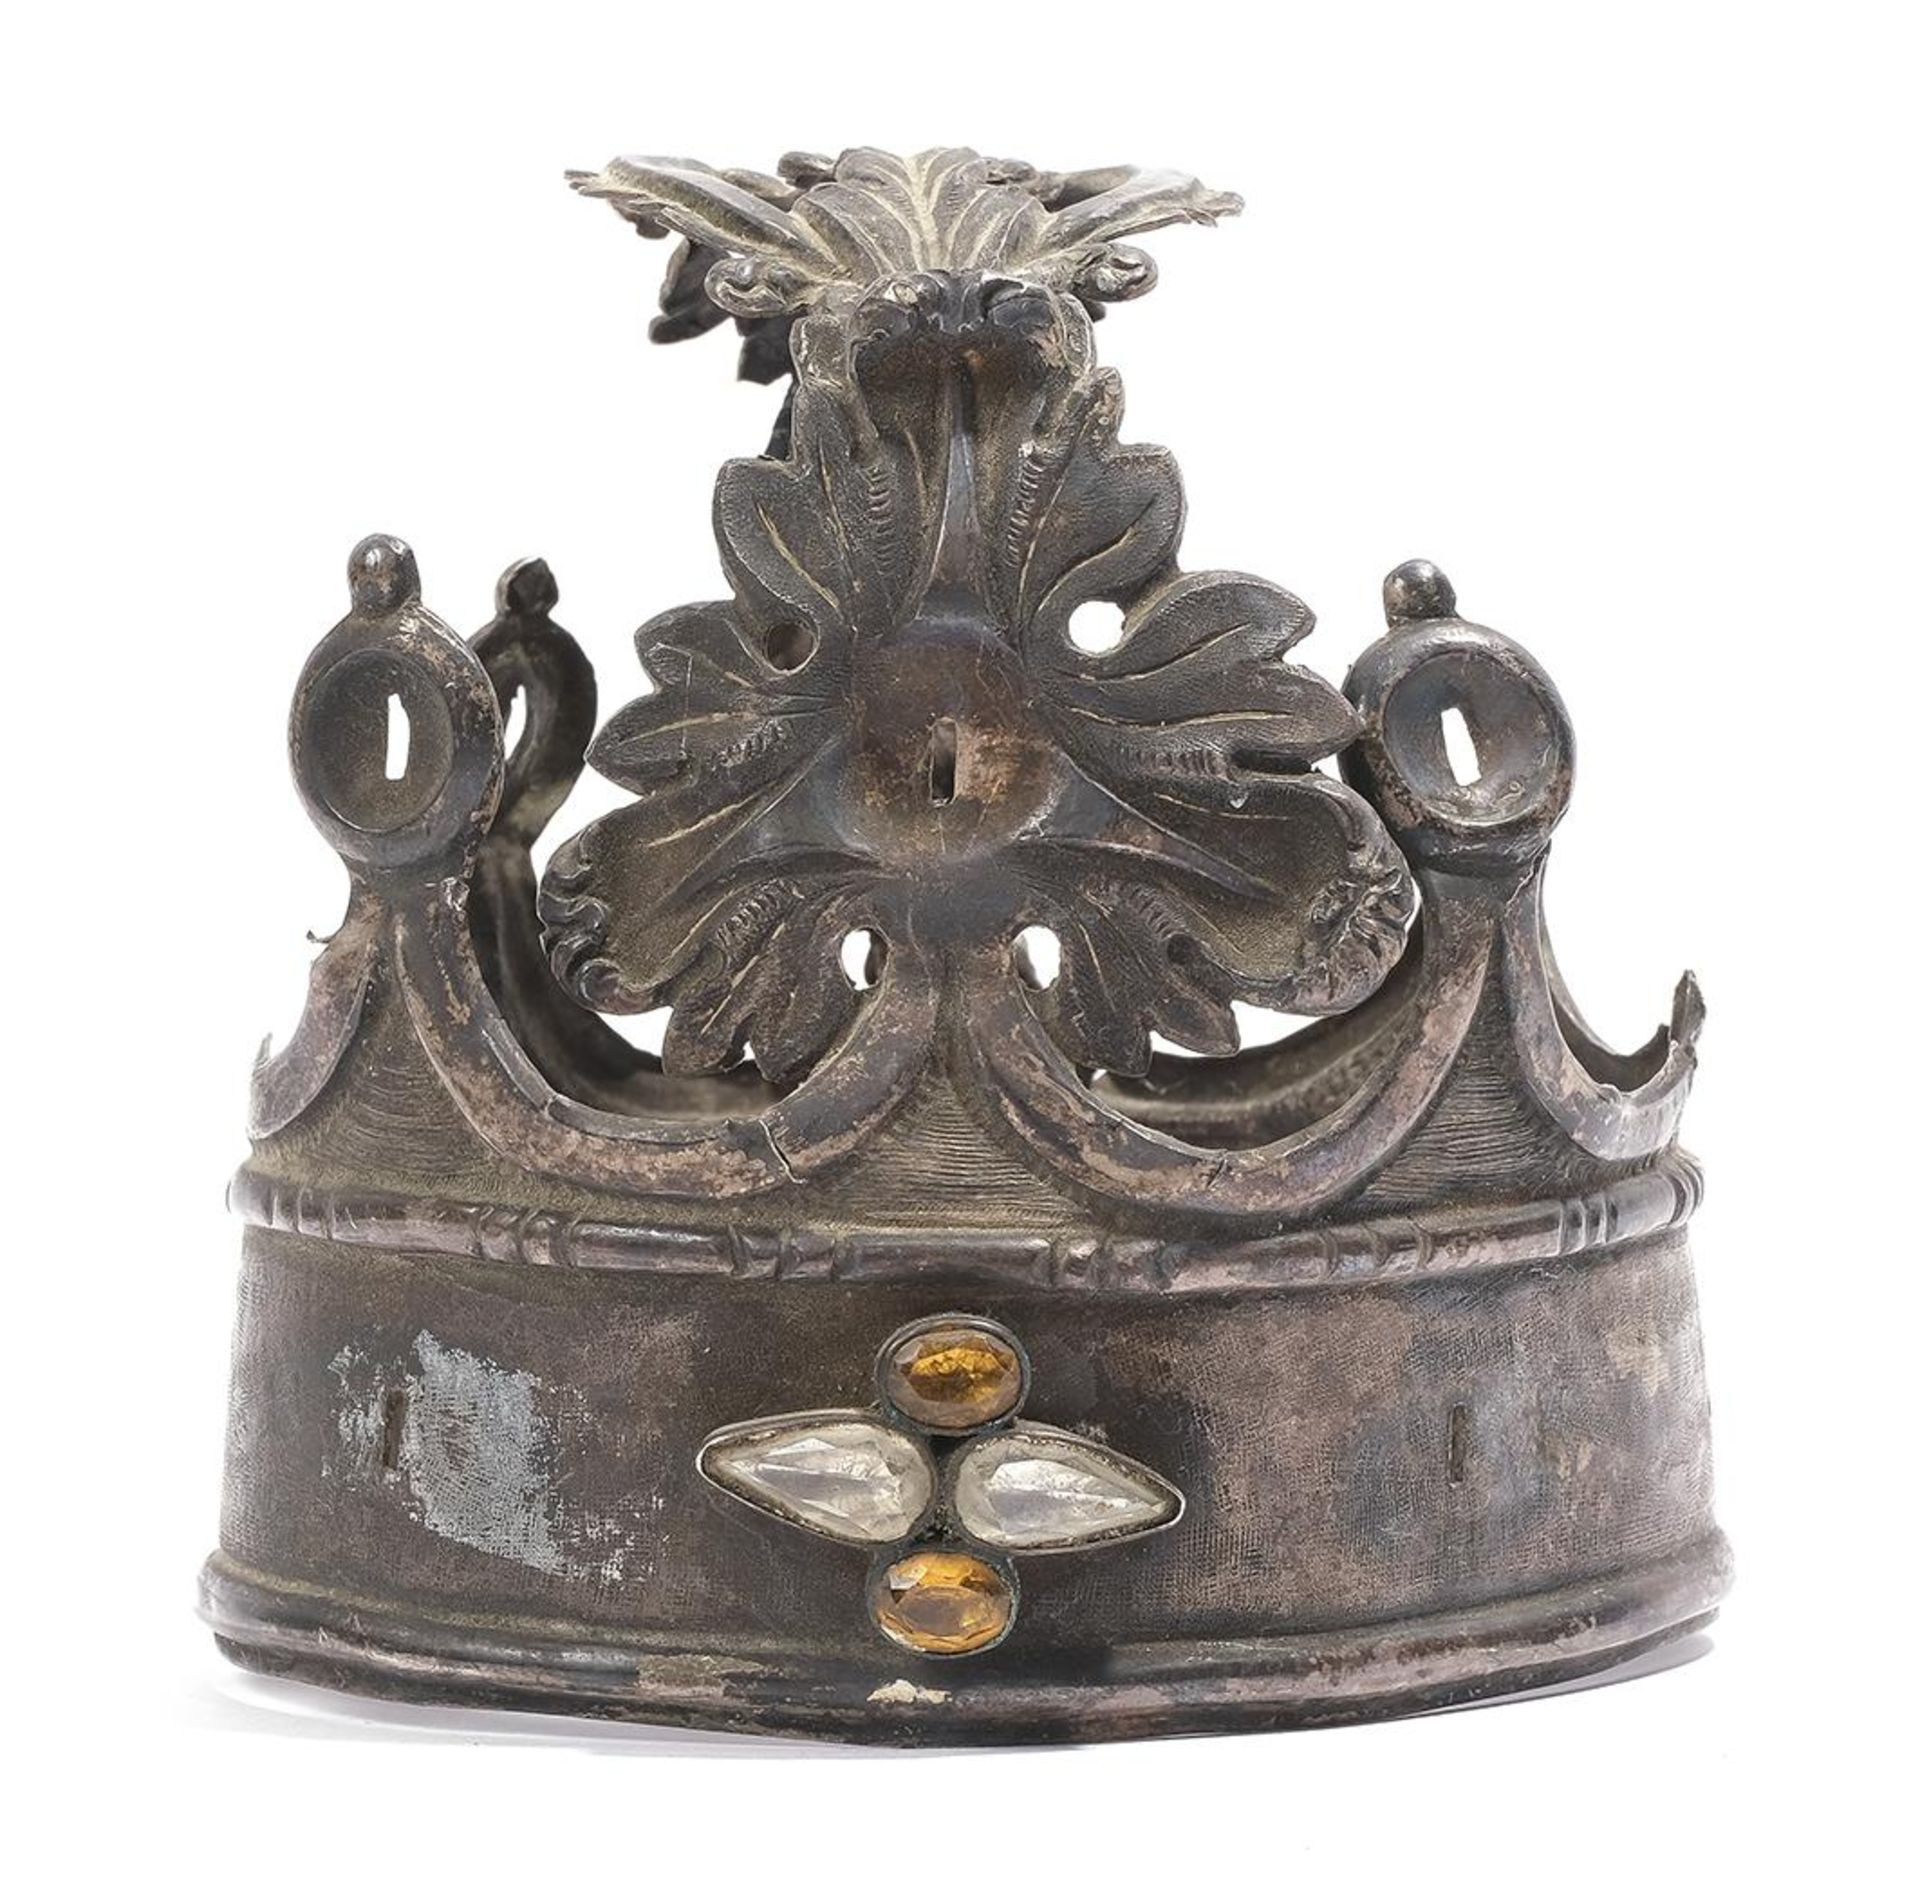 Corona para talla devocional realizada en plata punzonada y decoración repujada.